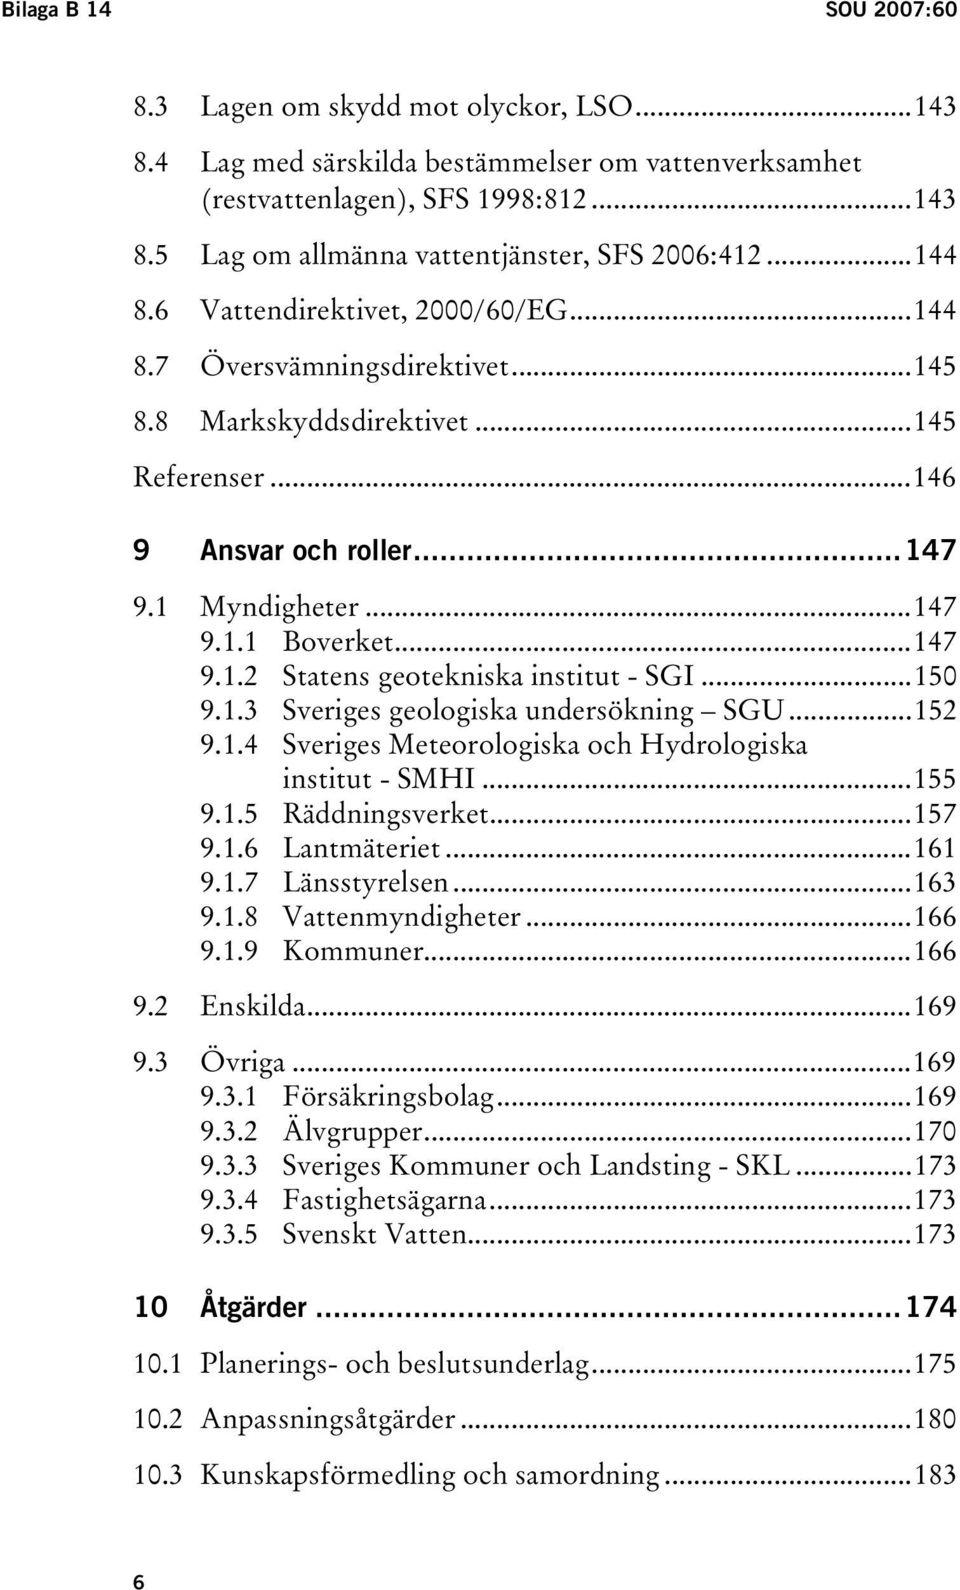 ..150 9.1.3 Sveriges geologiska undersökning SGU...152 9.1.4 Sveriges Meteorologiska och Hydrologiska institut - SMHI...155 9.1.5 Räddningsverket...157 9.1.6 Lantmäteriet...161 9.1.7 Länsstyrelsen.